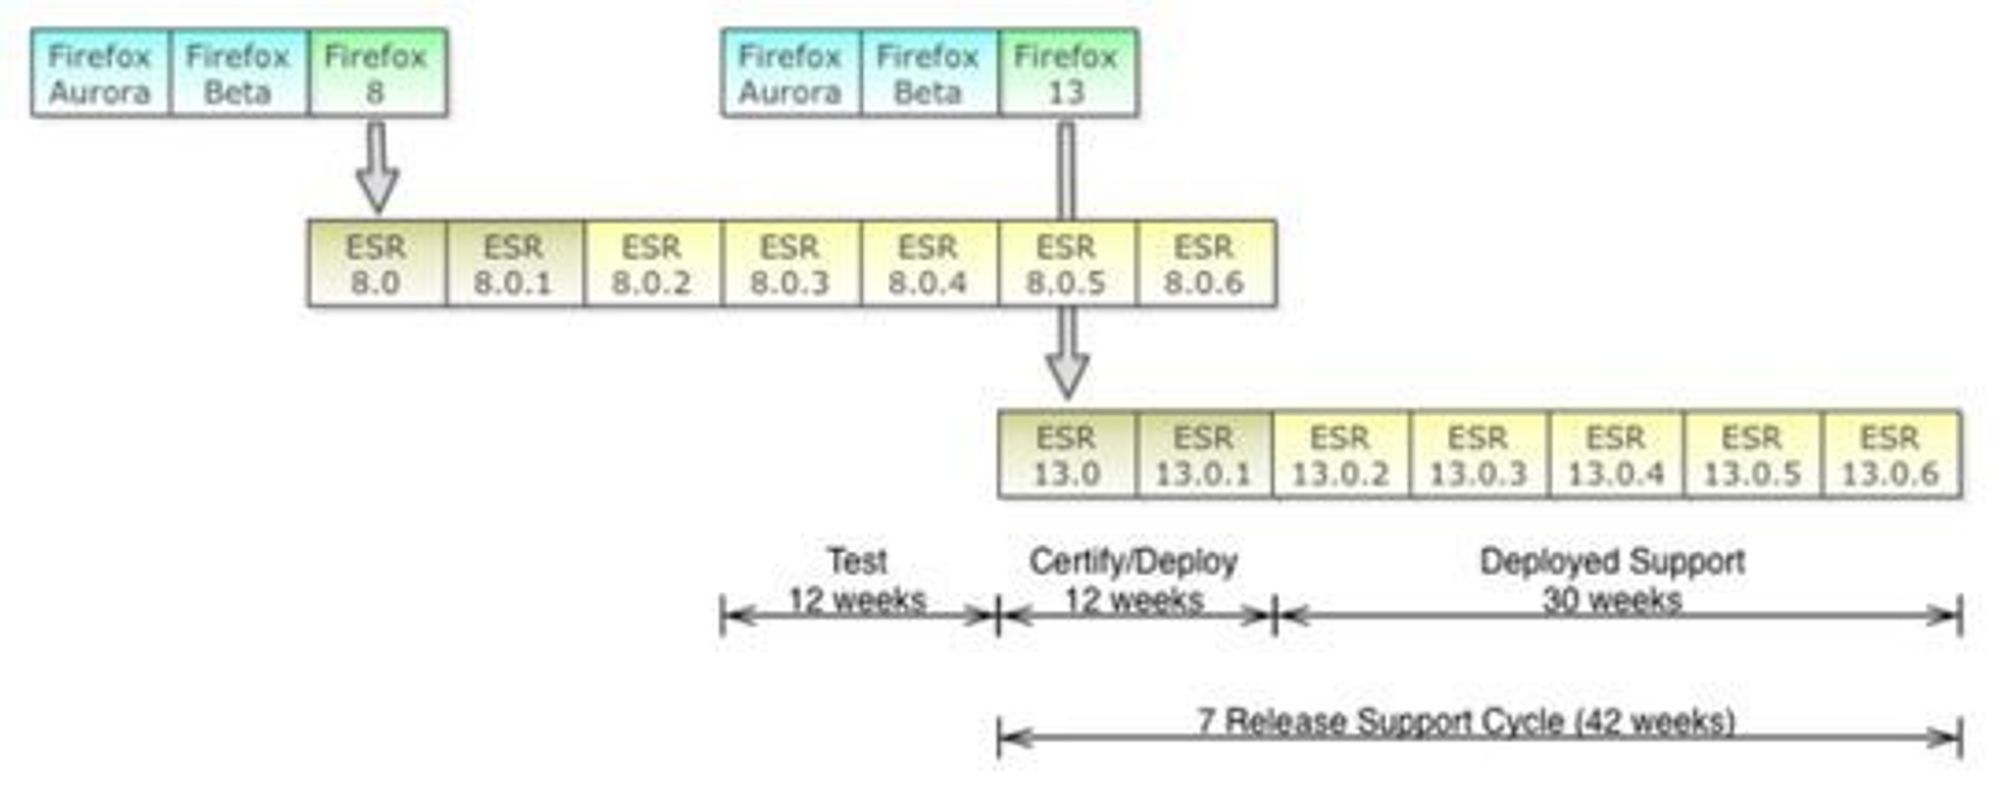 Foreslått syklus for utgivelse av Firefox ESR.